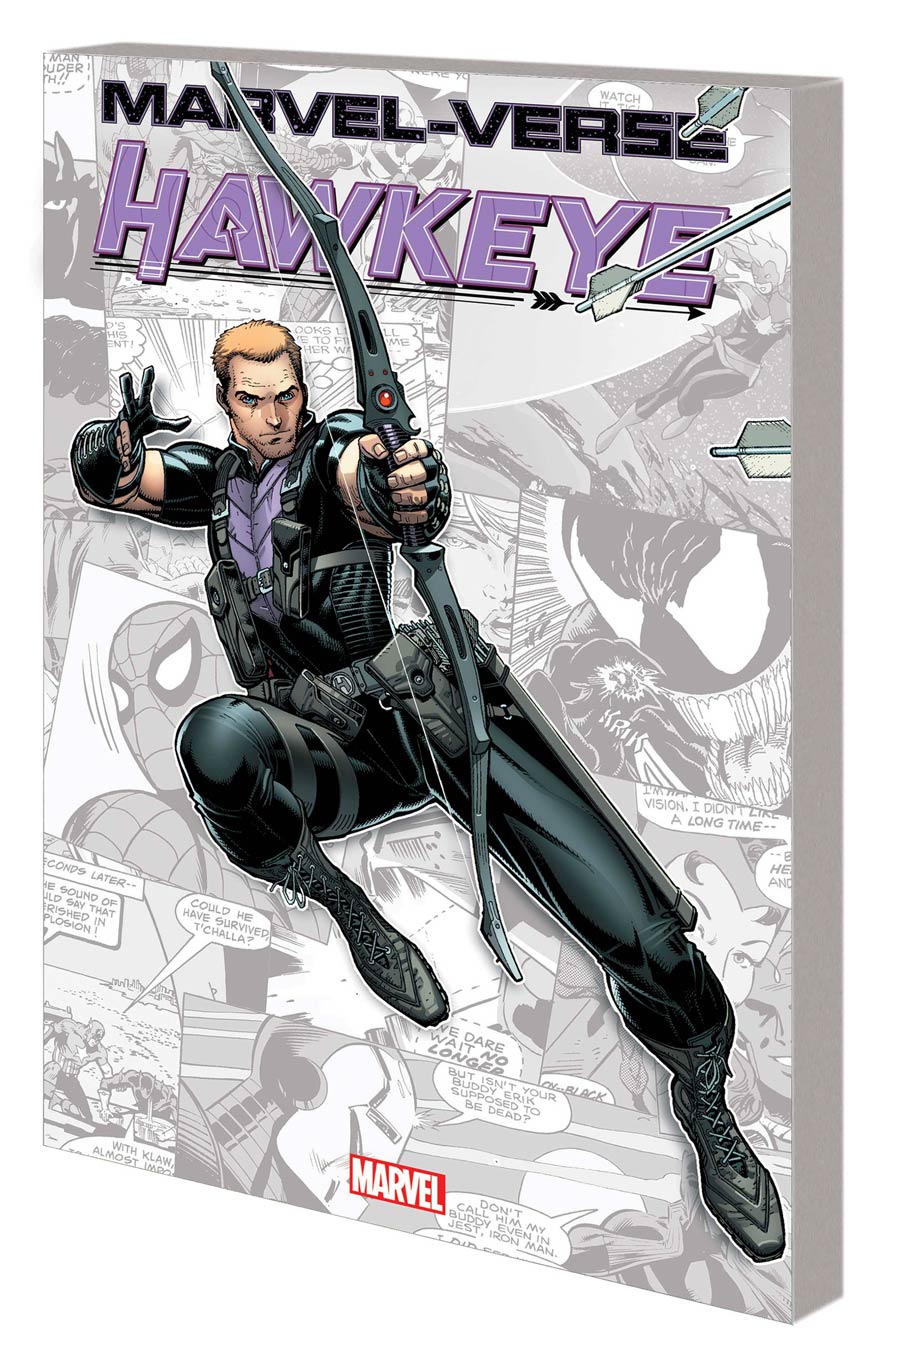 Marvel-Verse Hawkeye GN